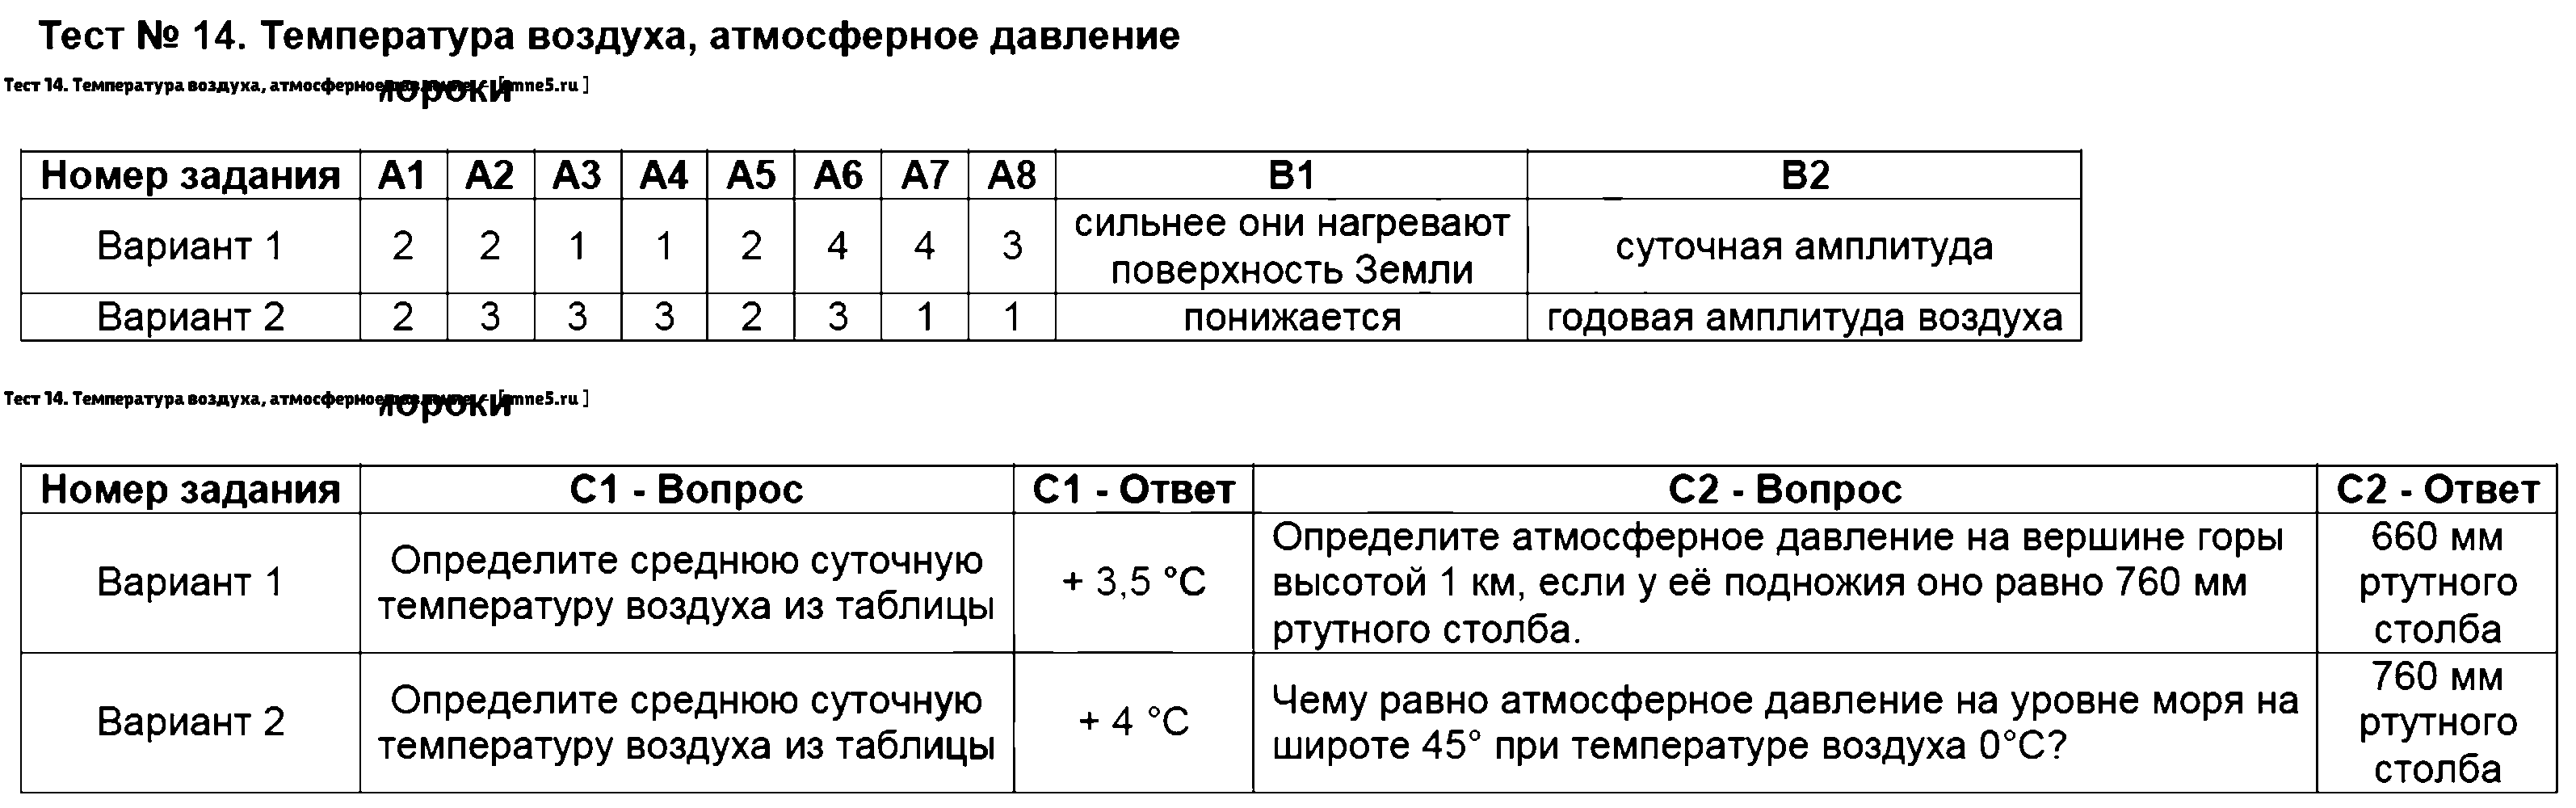 ГДЗ География 6 класс - Тест 14. Температура воздуха, атмосферное давление